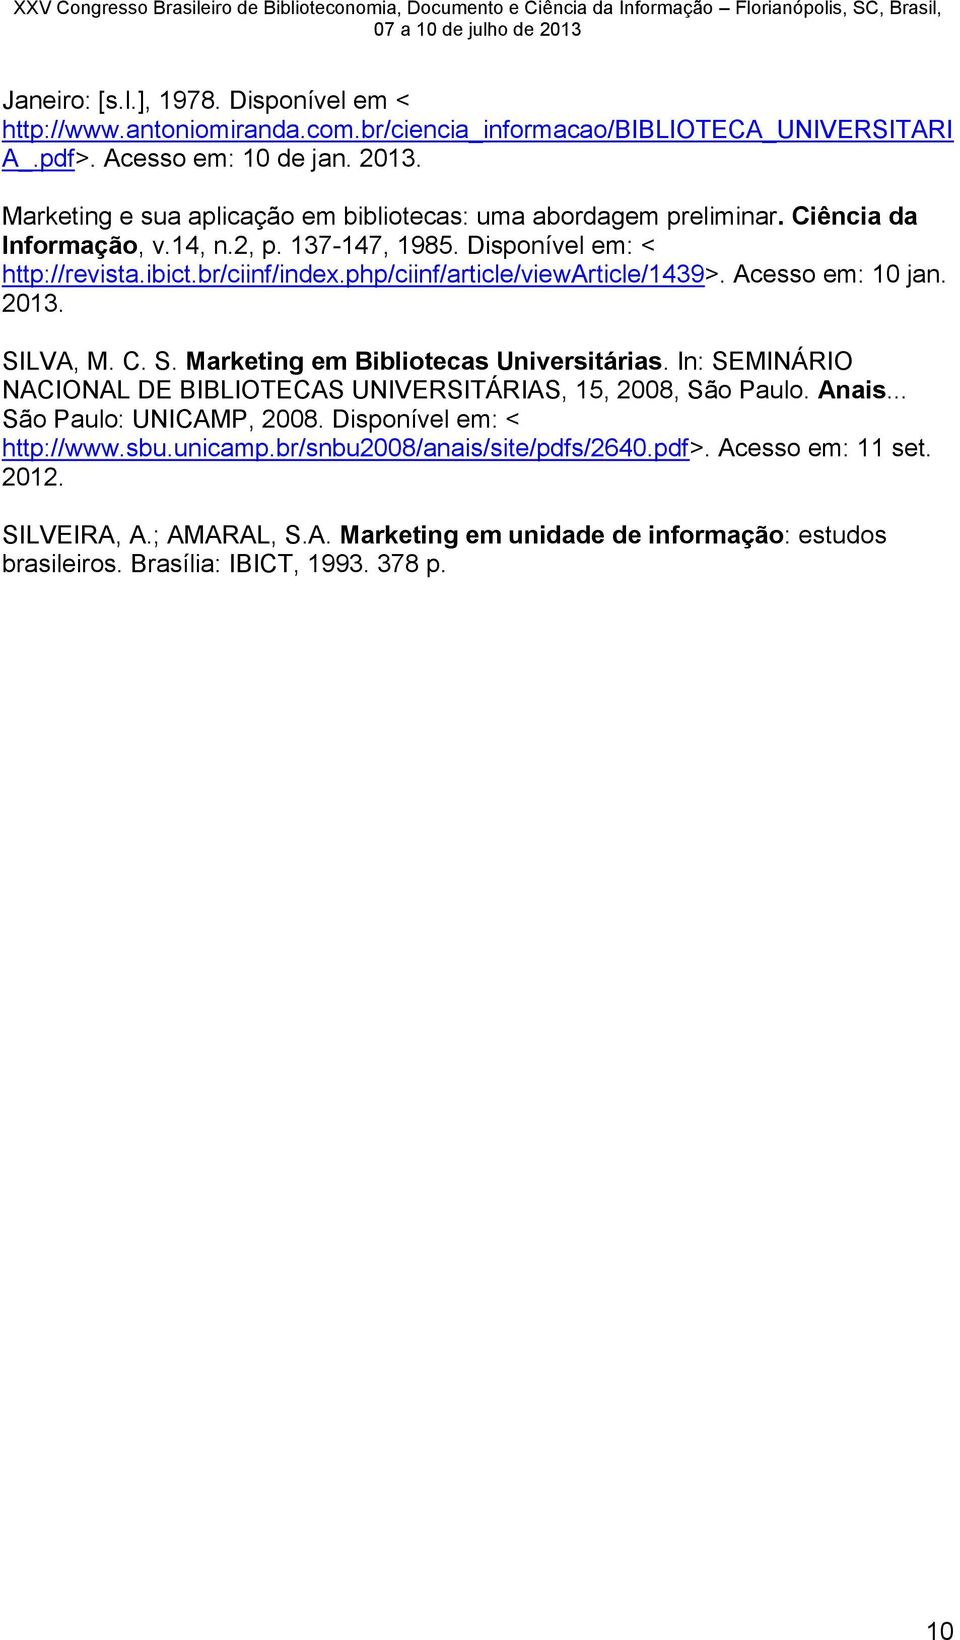 php/ciinf/article/viewarticle/1439>. Acesso em: 10 jan. 2013. SILVA, M. C. S. Marketing em Bibliotecas Universitárias. In: SEMINÁRIO NACIONAL DE BIBLIOTECAS UNIVERSITÁRIAS, 15, 2008, São Paulo.